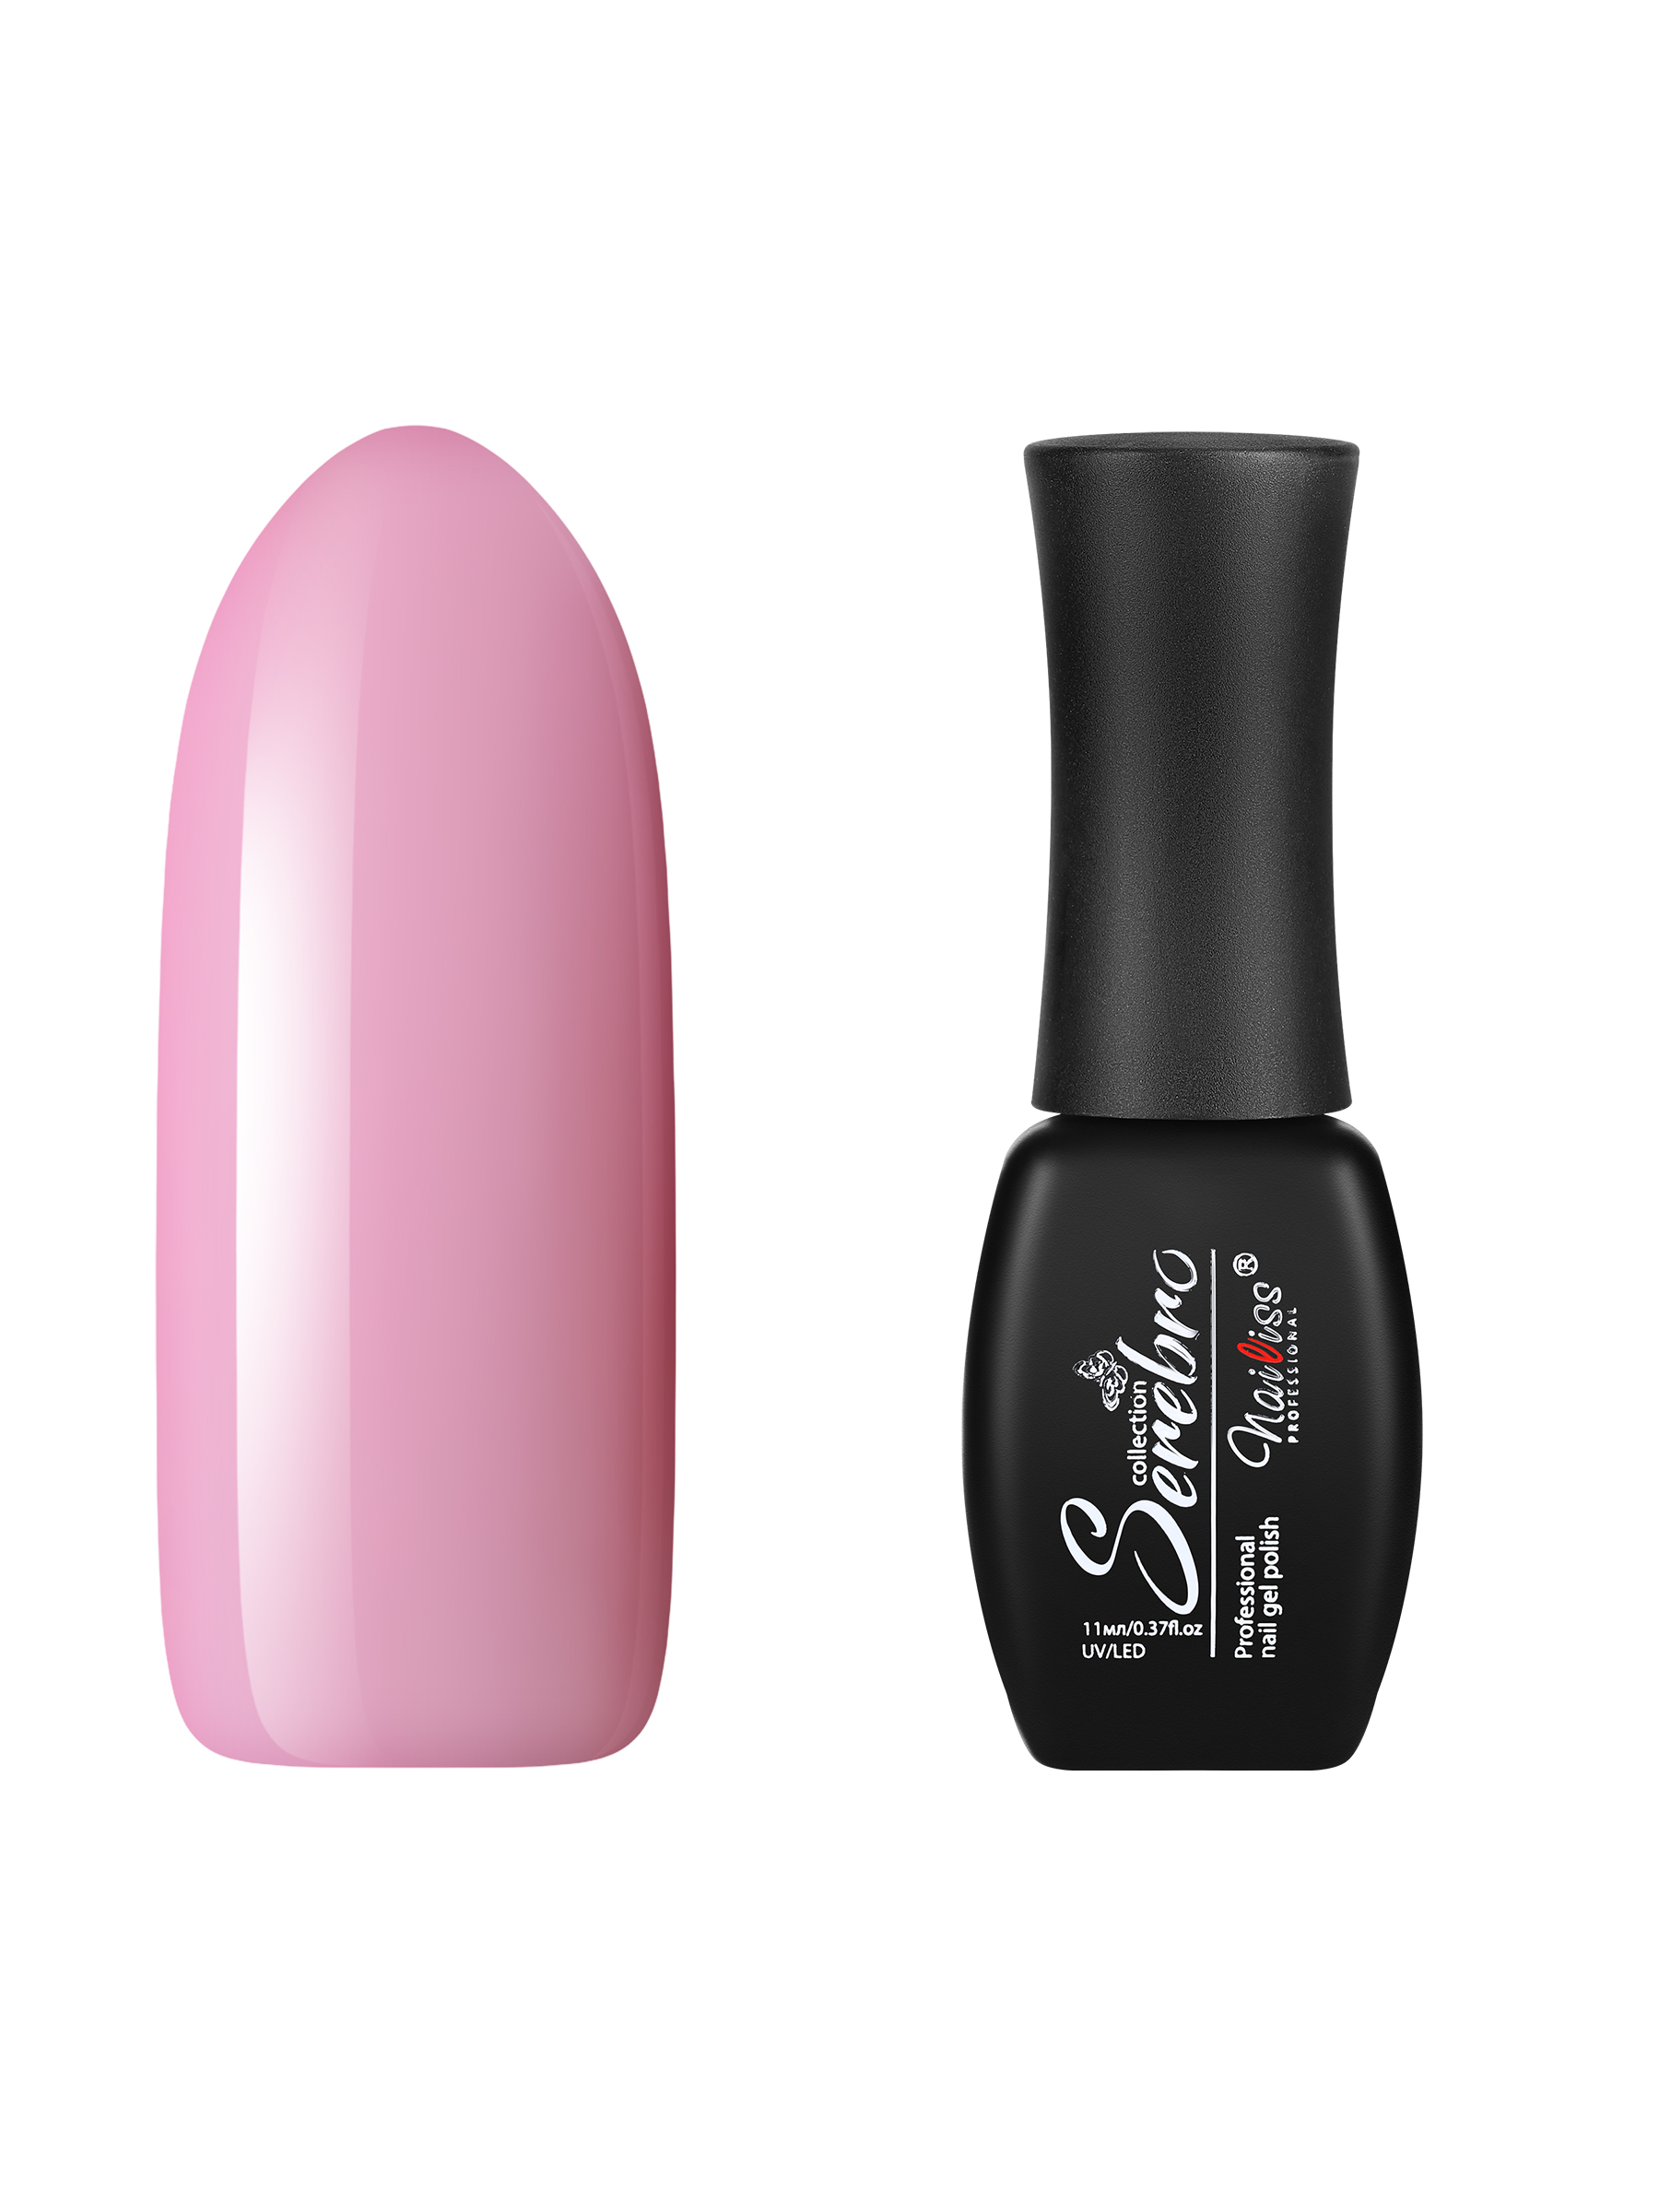 Гель-лак для ногтей Serebro, цветной, плотный, гипоаллергенный, насыщенный, розовый, 11 мл зажигалка электронная турист дуговая влагозащита камуфляж usb